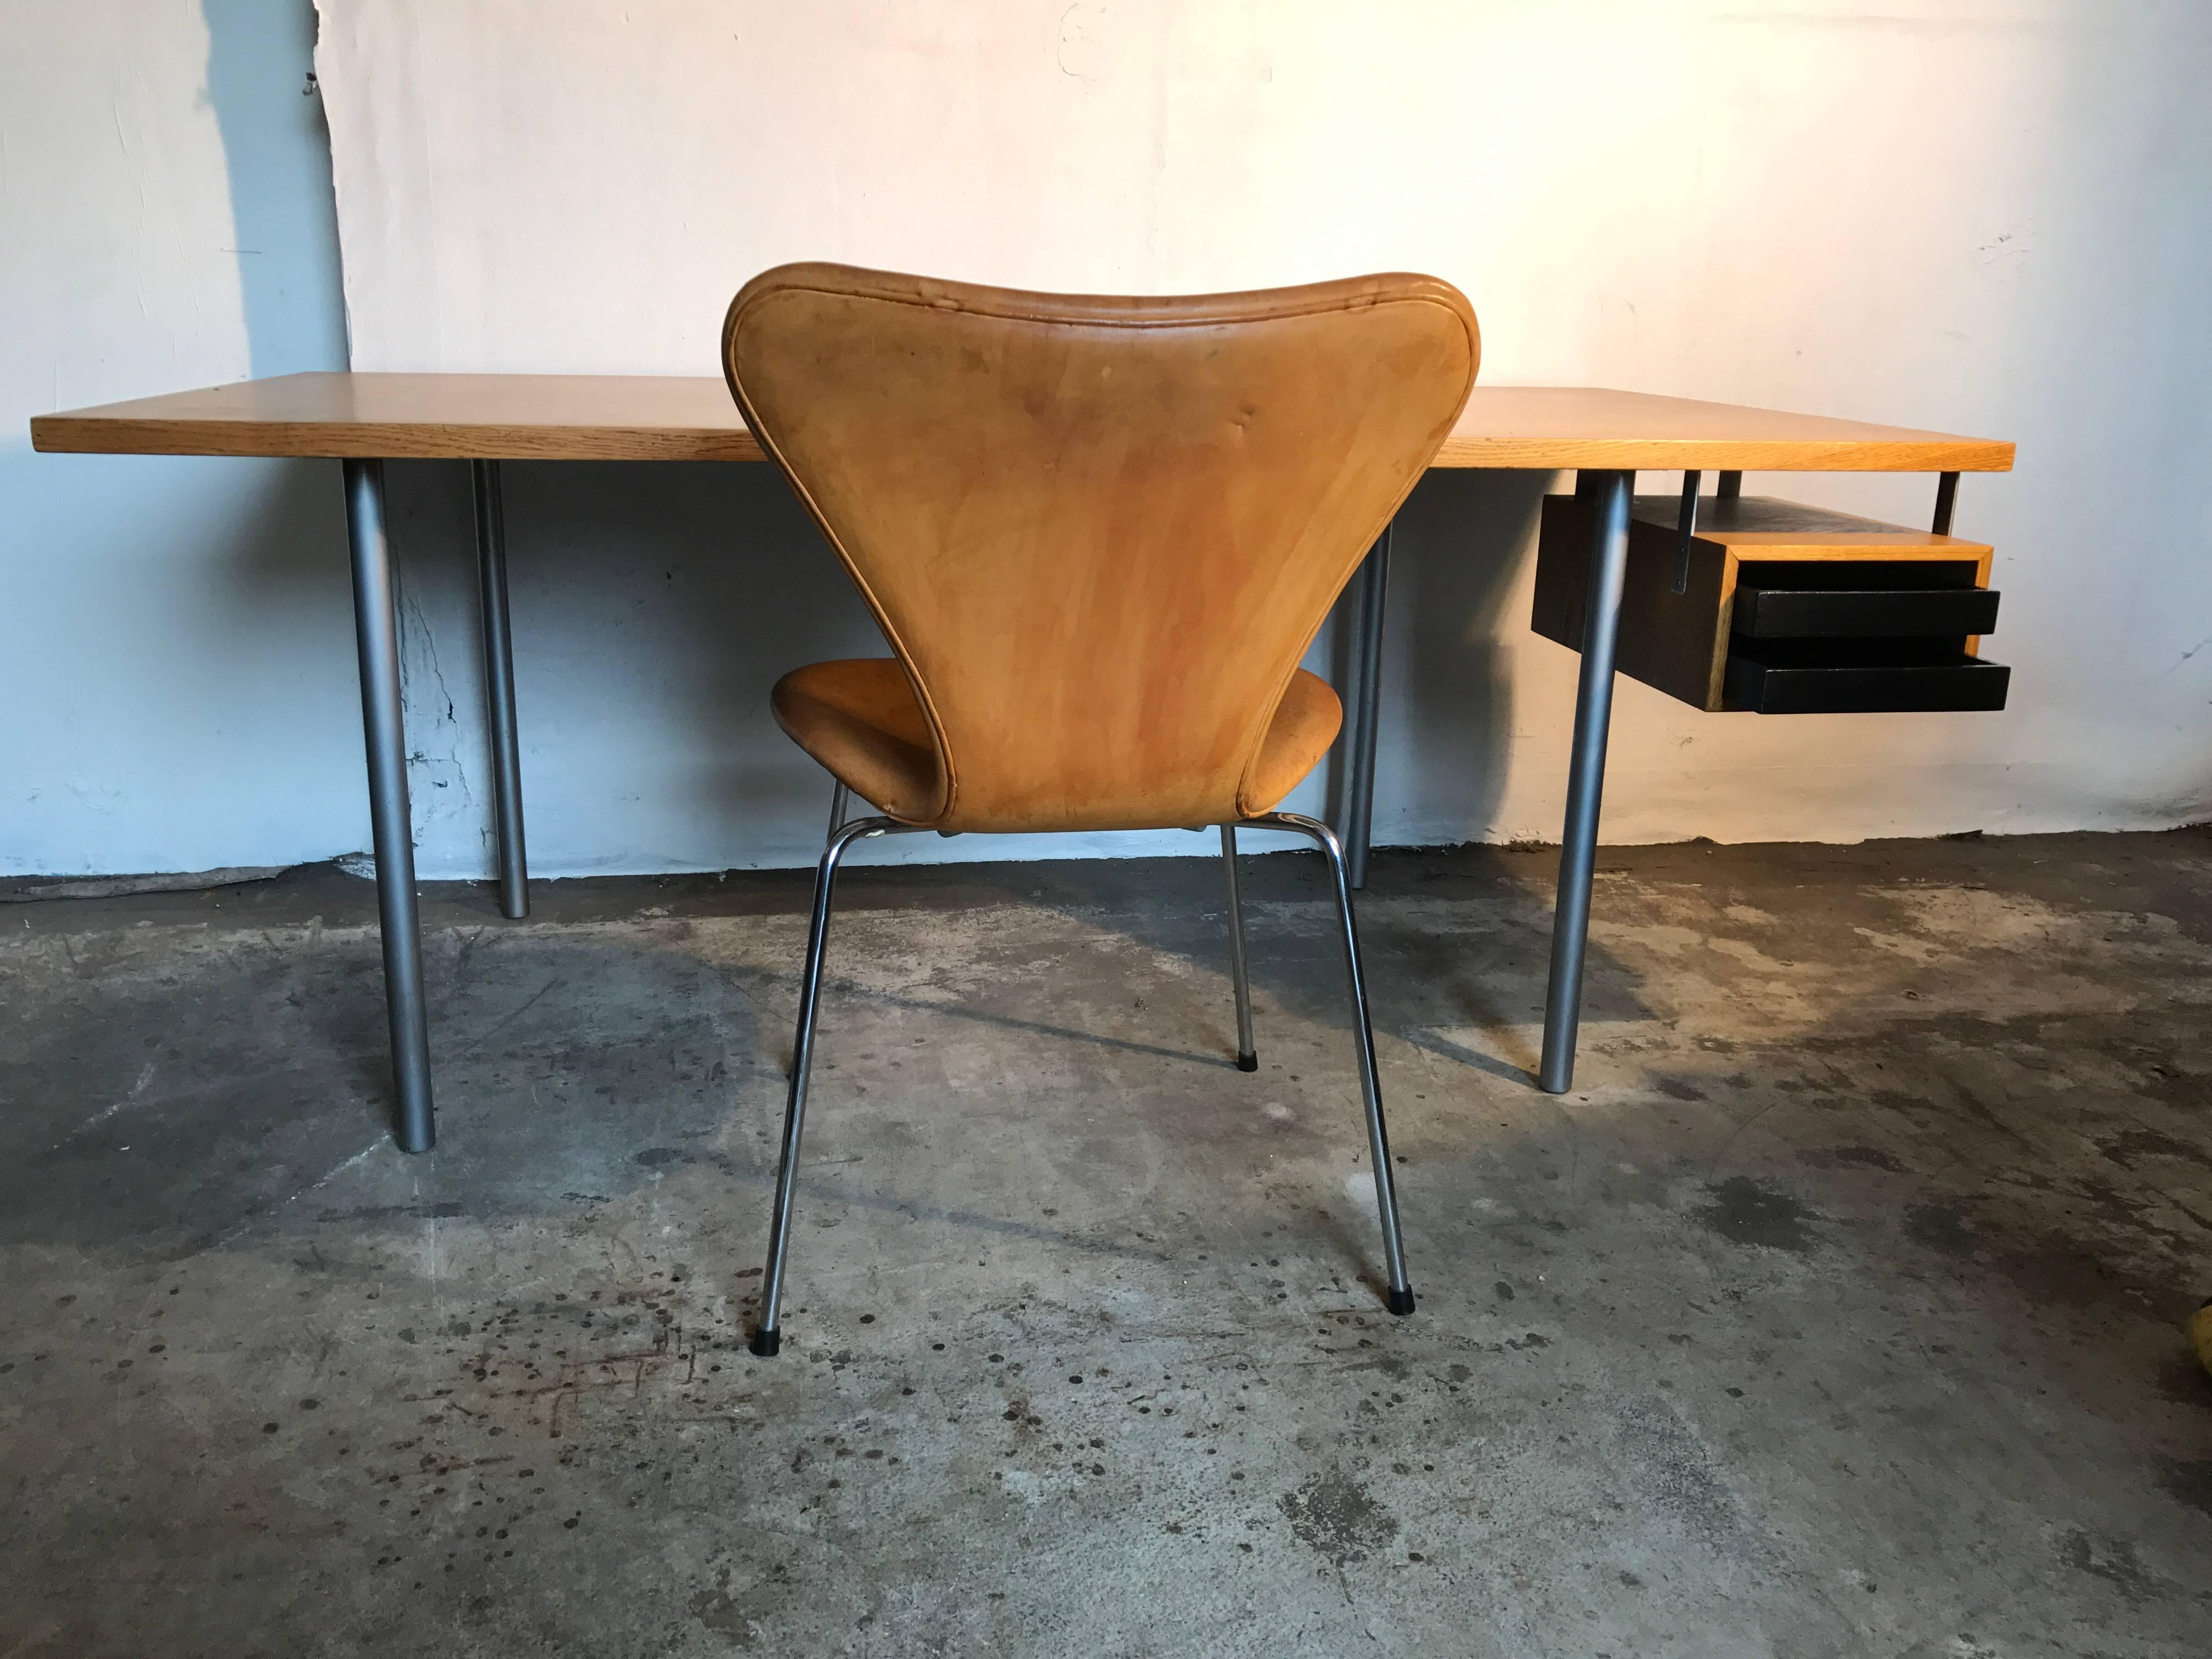 Sehr seltener maßgefertigter Schreibtisch von Poul Kjærholm aus dem Jahr 1964. Schreibtischplatte aus Eichenholz. Zwei schwarz lackierte Schubladen und Beine aus Stahlrohr. An wenigen Stellen gestempelt E.kold.